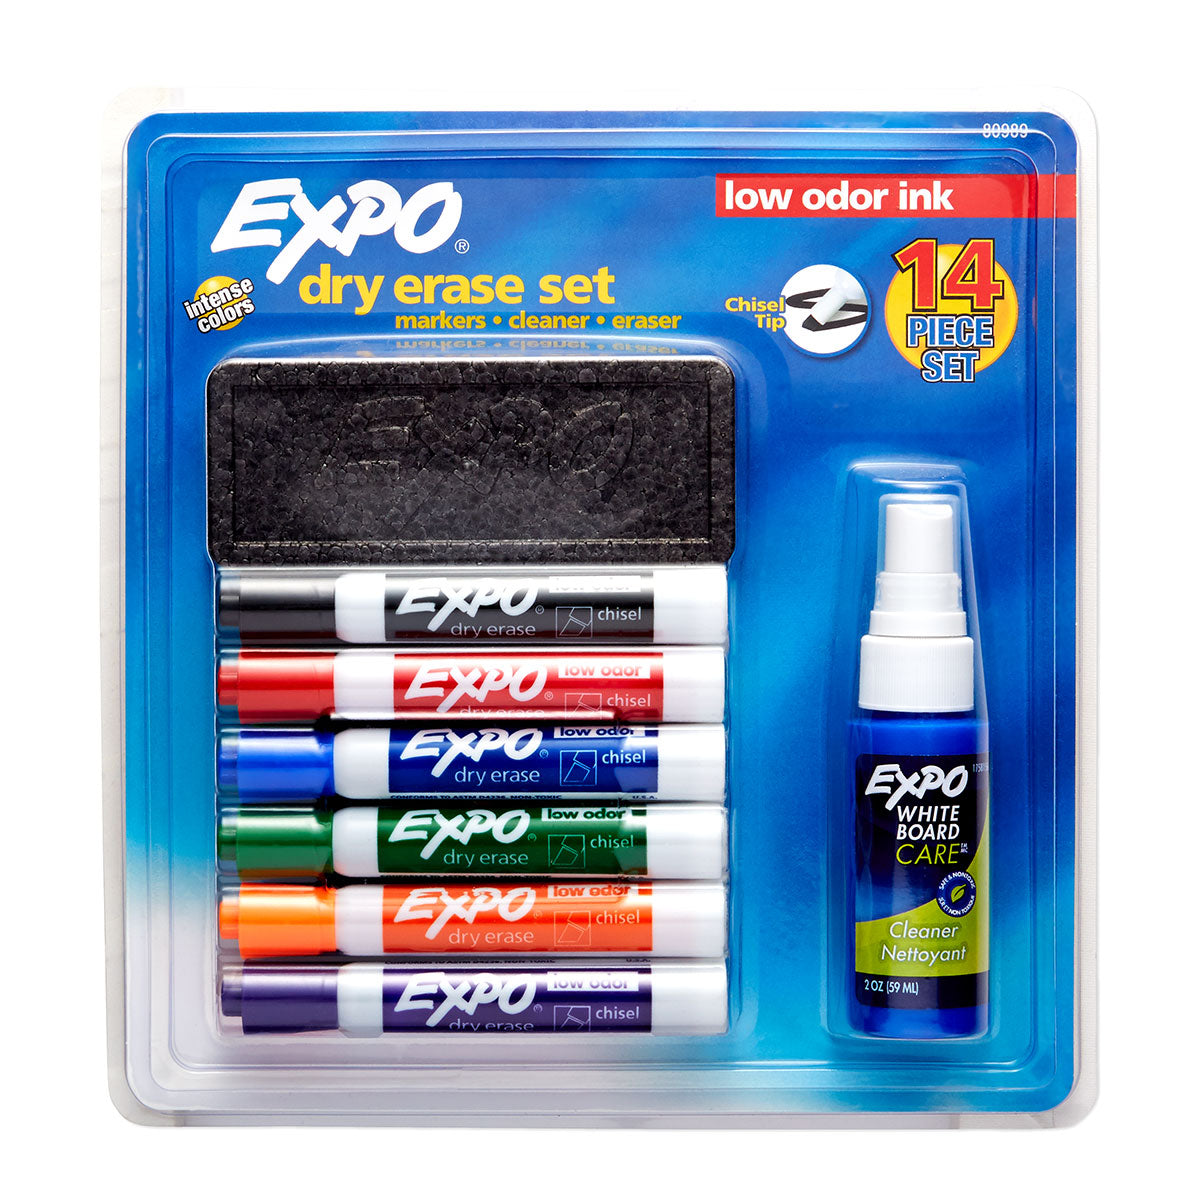 Mr. Pen- Erasers, Pencil Eraser, 12 Pack, Neon Colors, Erasers, Eraser,  Erasers for Drawing, Eraser Pencil, Pencil Erasers 